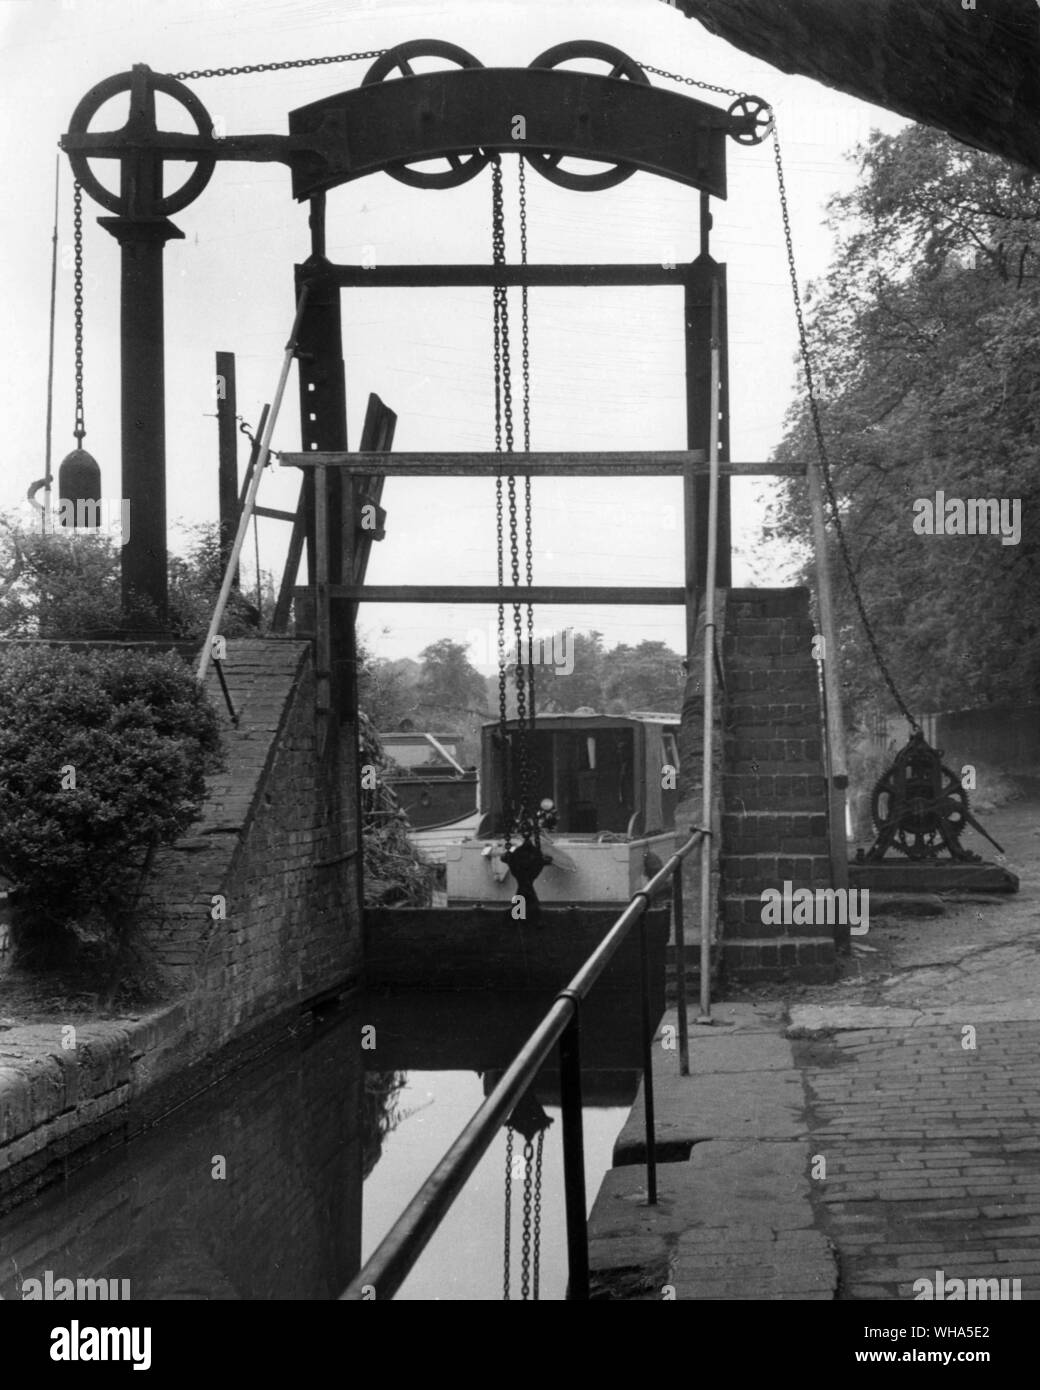 Una rara ghigliottina loch dove il canale di Stratford si unisce al Worcester e Birmingham Canal vicino al Birmingham.. Fotografia di Eric de Mare Foto Stock